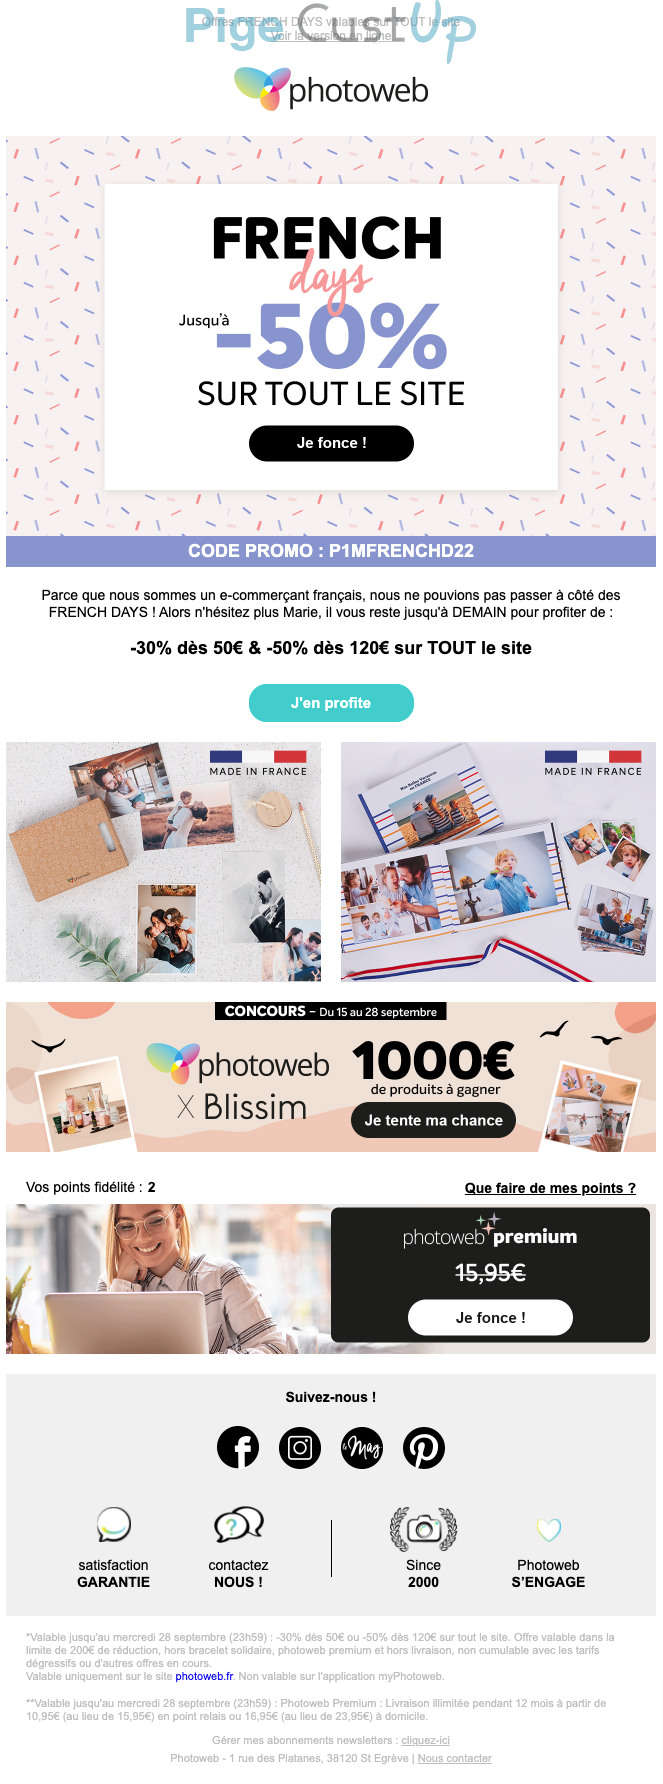 Exemple de Type de media  e-mailing - Photoweb - Marketing Acquisition - Derniers jours - Ventes flash, soldes, demarque, promo, réduction